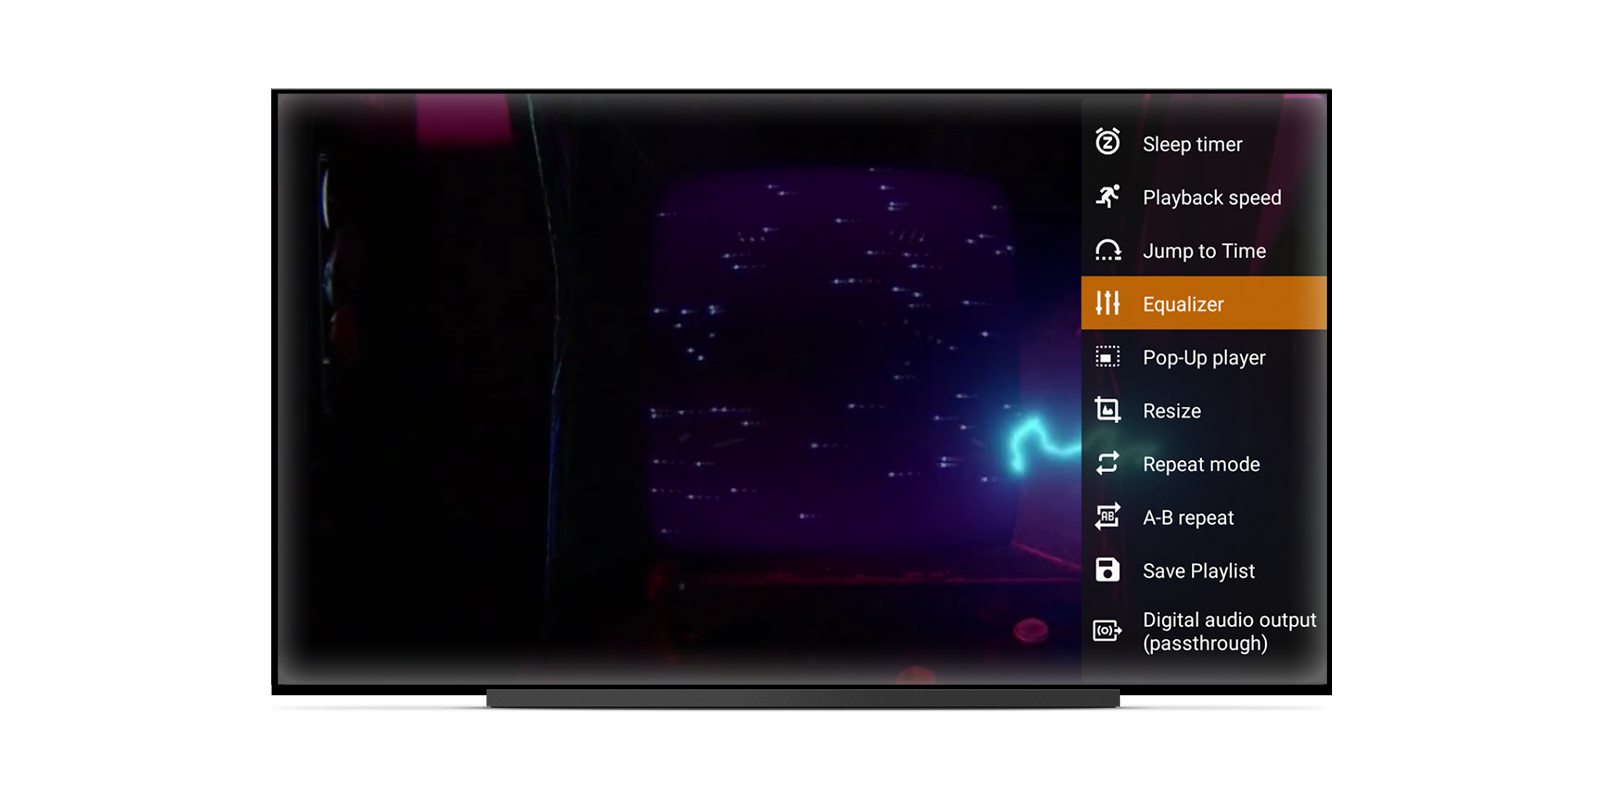 VLC は、大画面の Android TV で Leanback の視聴体験を提供できるように最適化されています